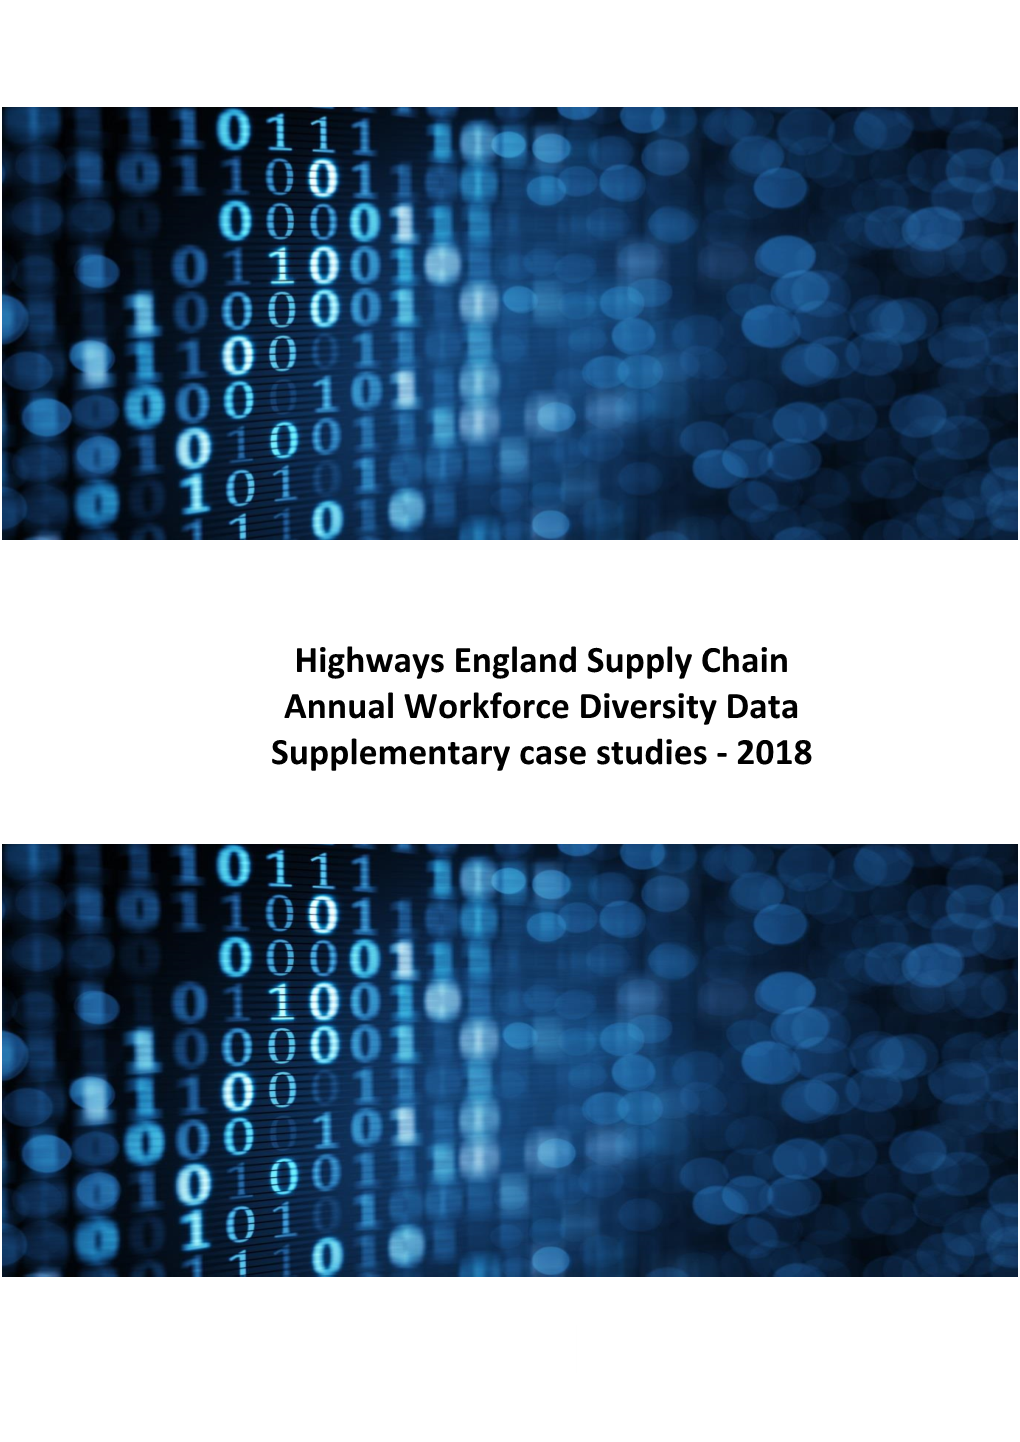 Highways England Supply Chain Annual Workforce Diversity Data Supplementary Case Studies - 2018